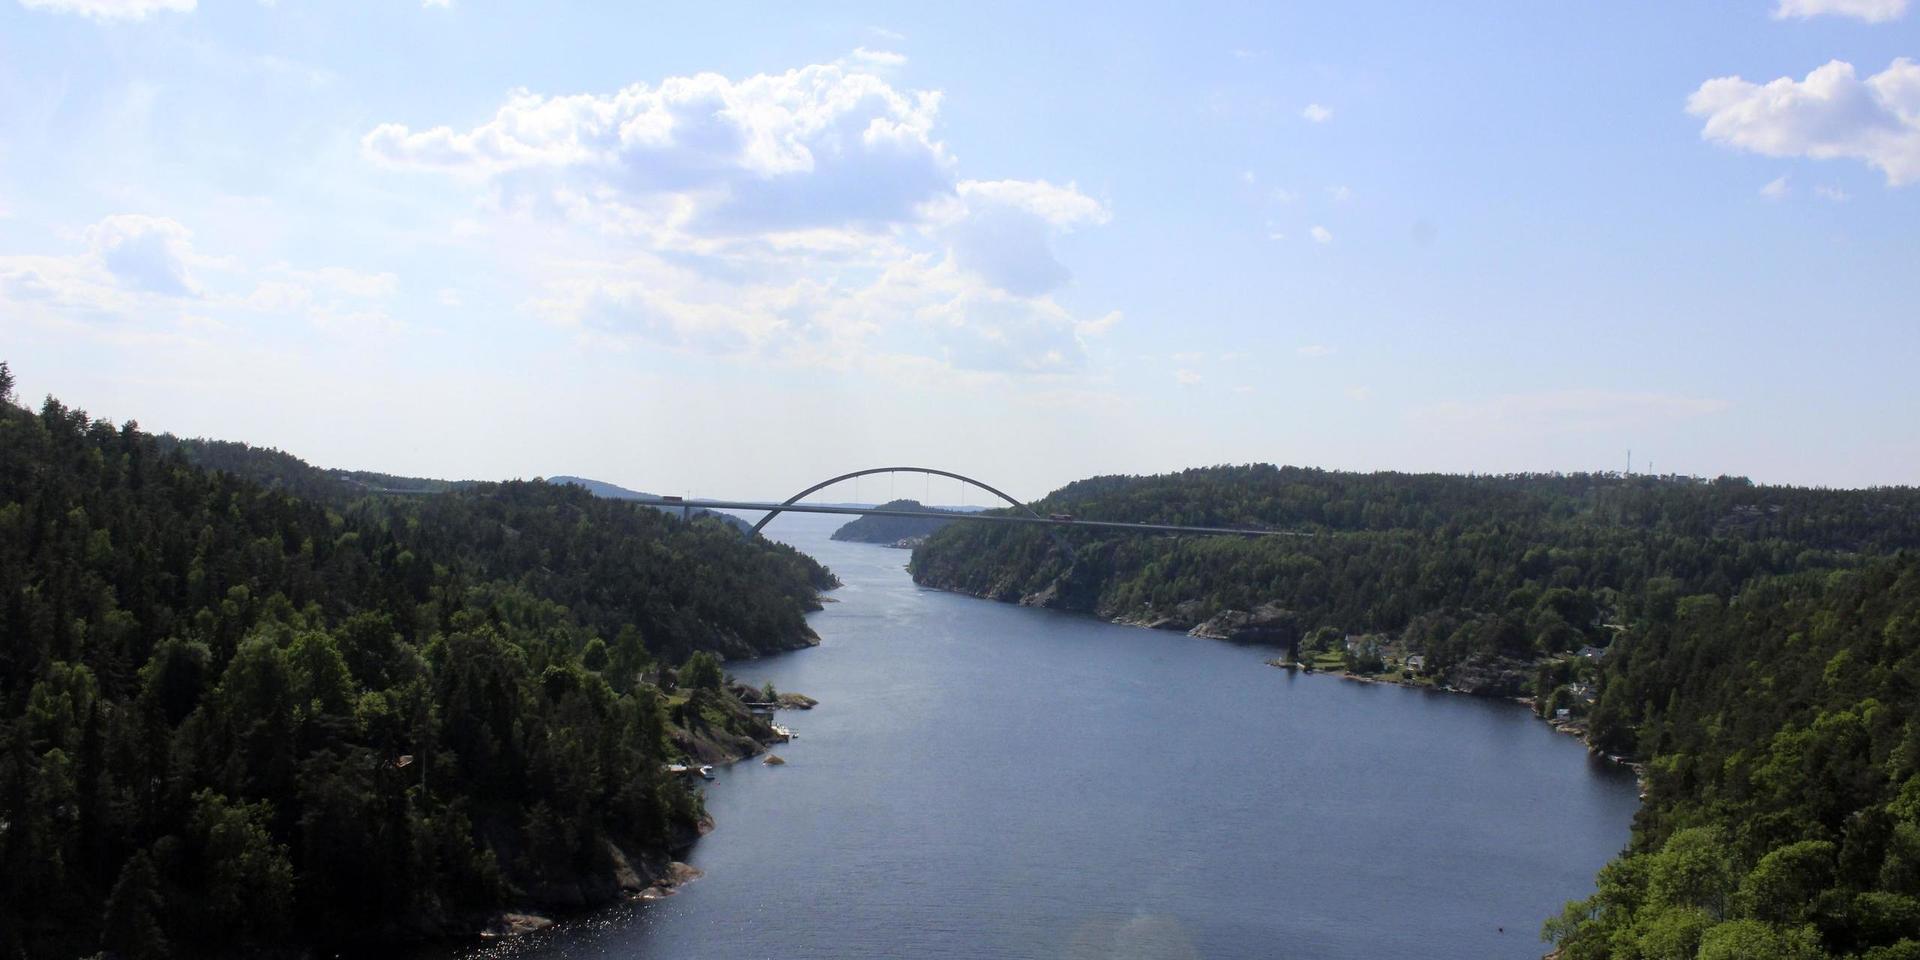 Nya Svinesundsbron var klar 2005. Sedan dess har gränspassage över broarna varit avgiftsbelagd.